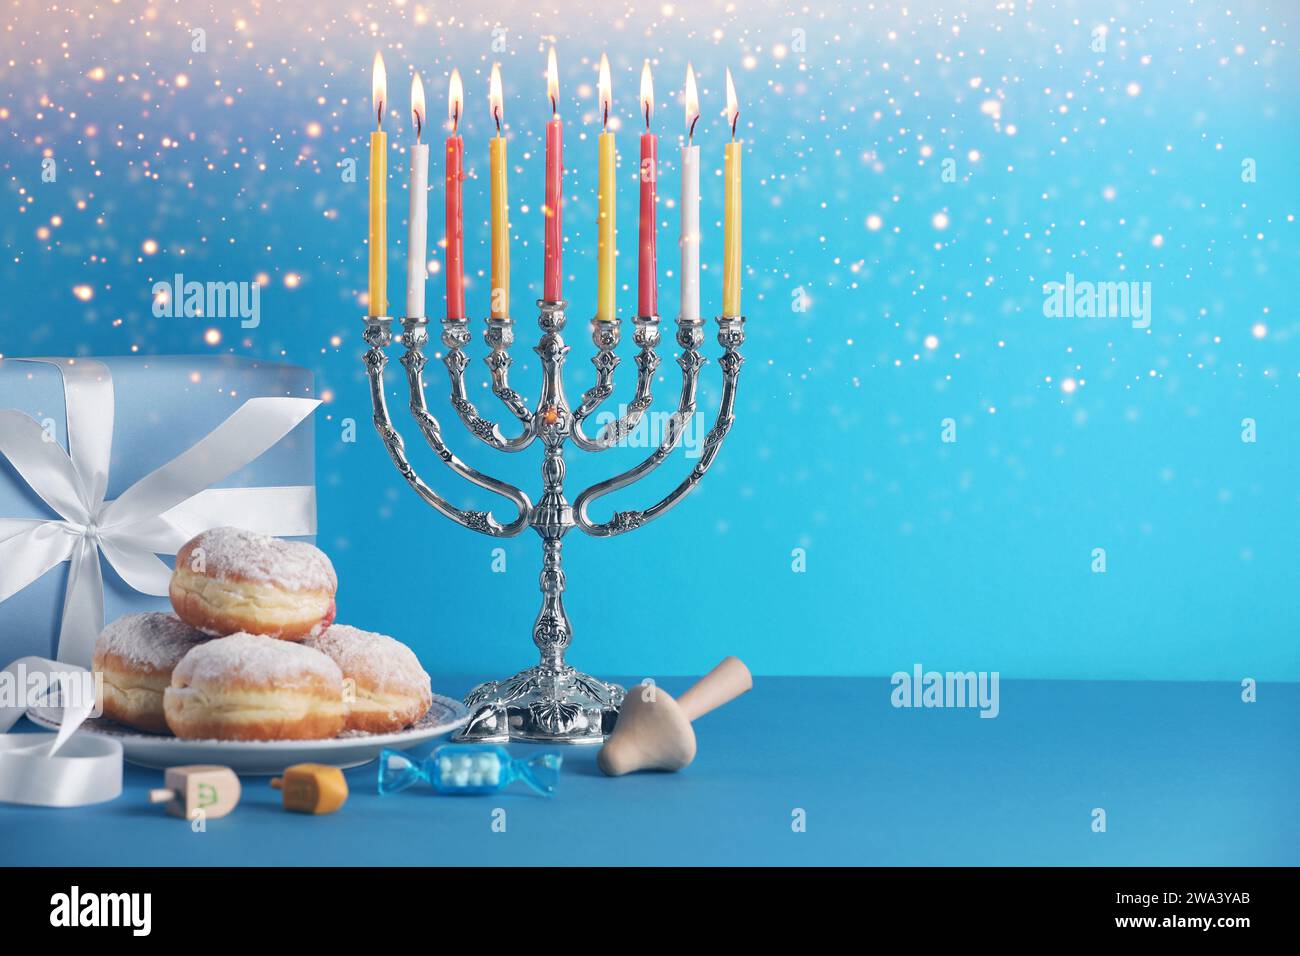 Hanukkah-Feier. Menora mit brennenden Kerzen, Dreidels, Donuts und Geschenkbox auf hellblauem Tisch, Platz für Text Stockfoto